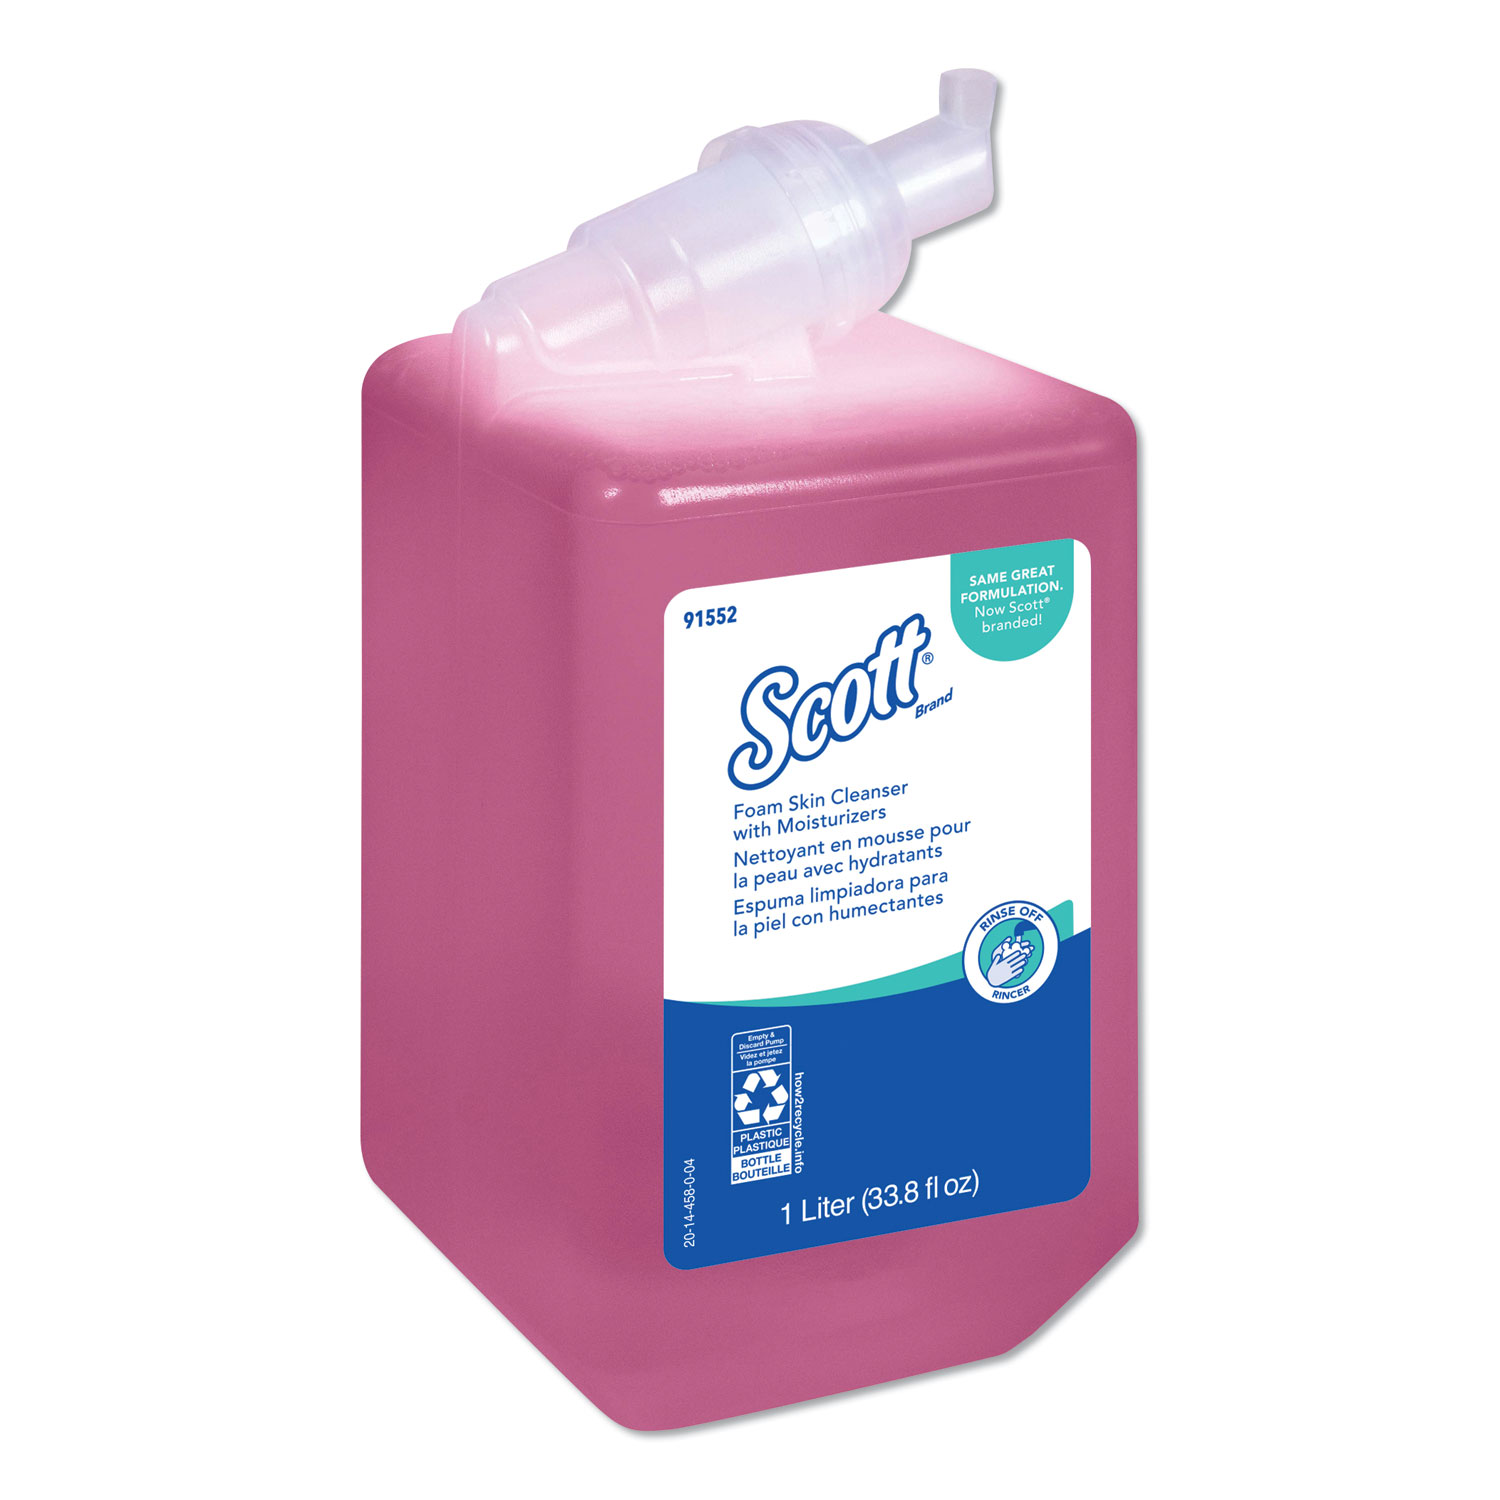  Scott KCC 91552 Pro Foam Skin Cleanser with Moisturizers, Light Floral, 1000mL Bottle (KCC91552CT) 